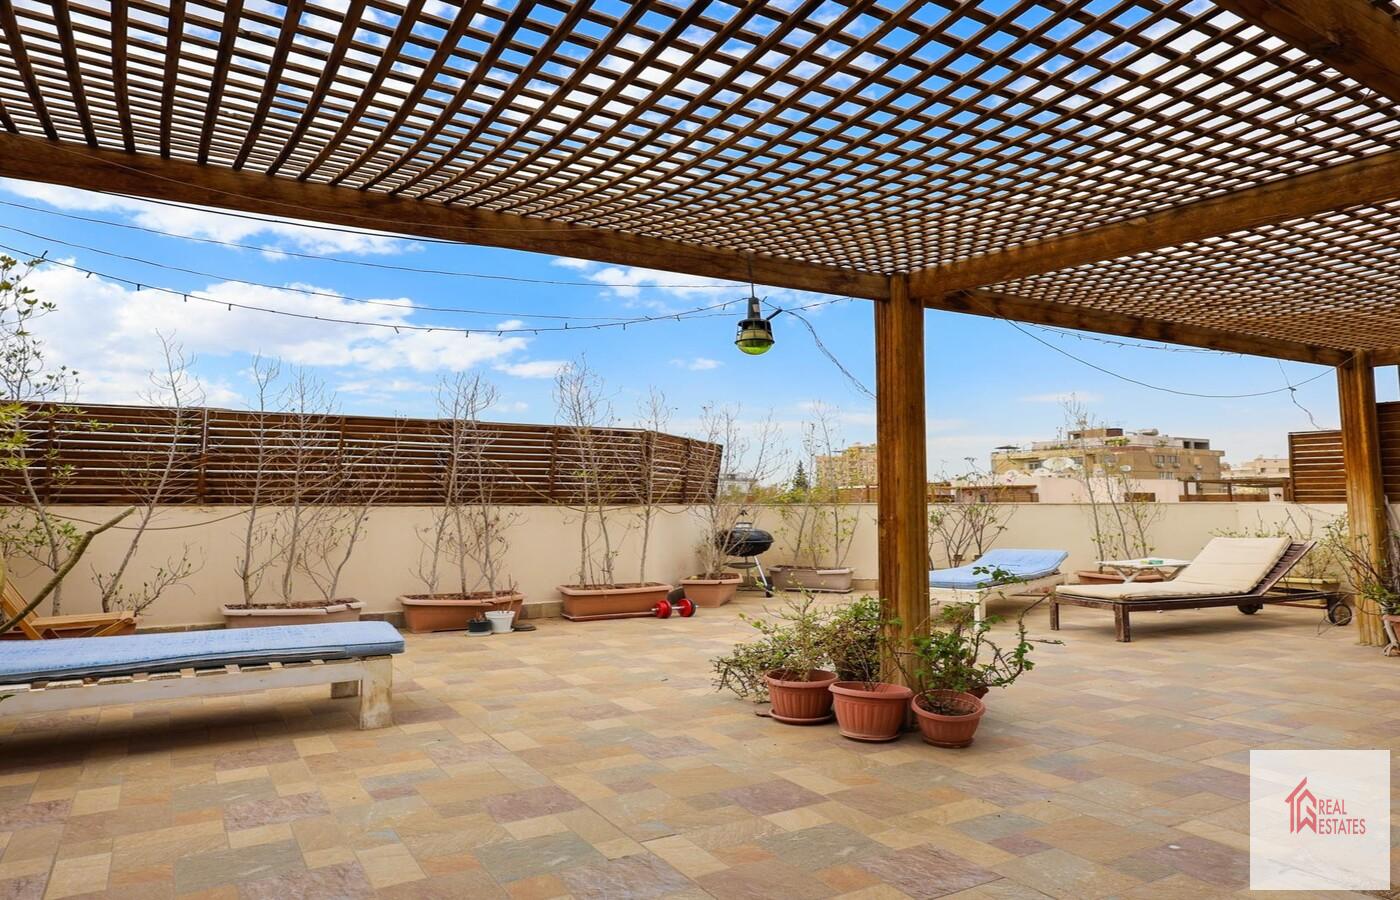 サラヤト マーディ - カイロ - エジプトの共有プール付き素晴らしい屋上デュプレックス賃貸